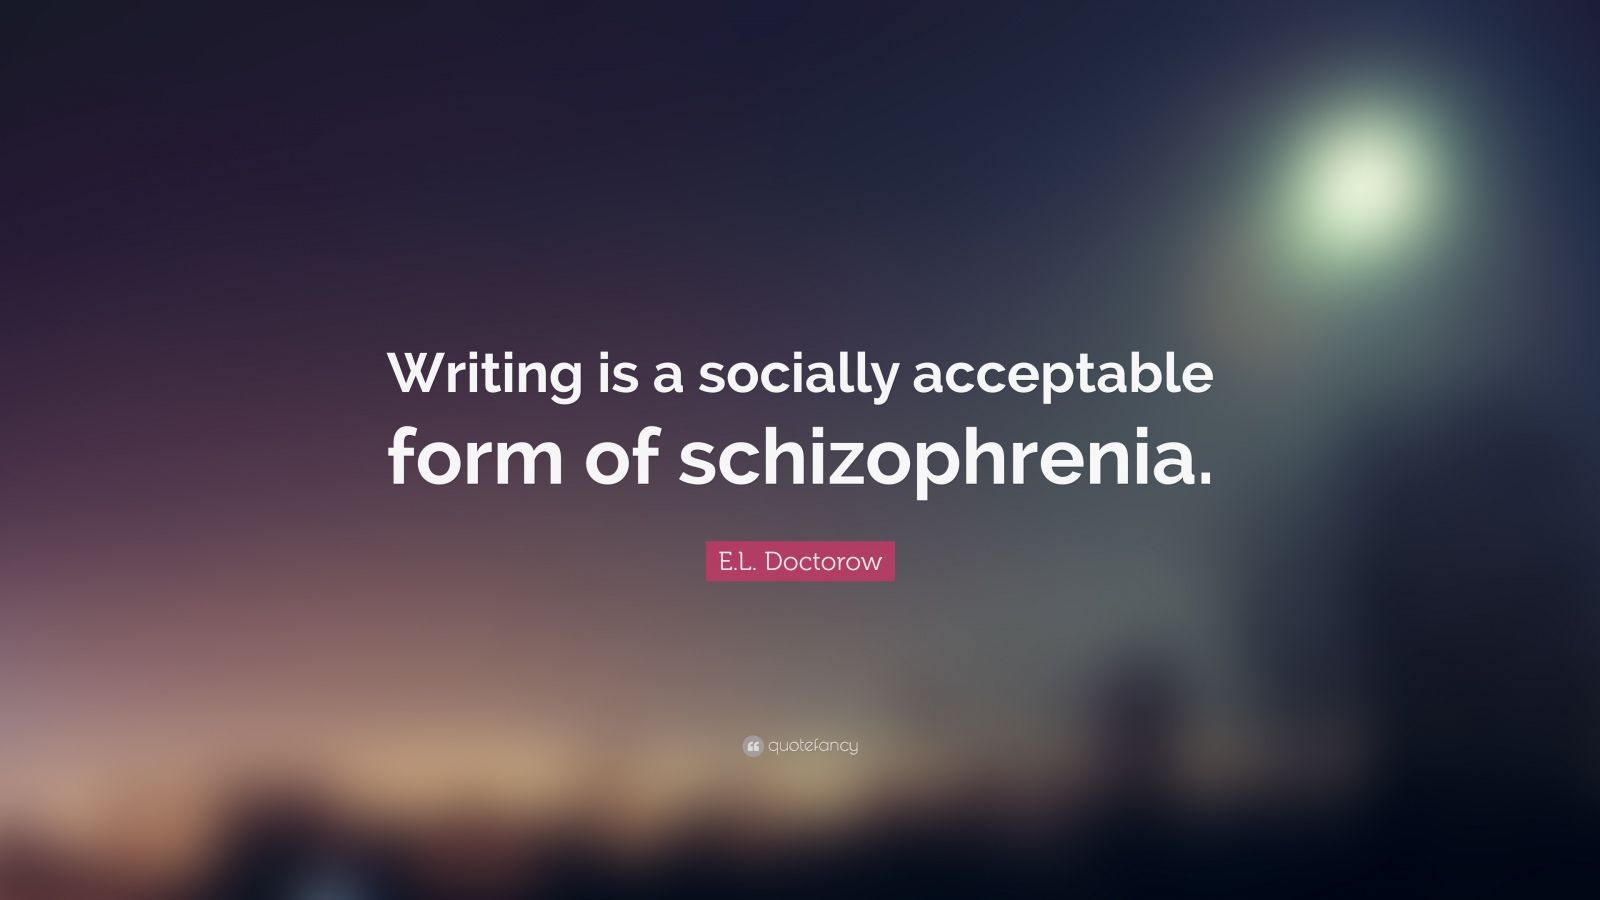 A Socially Acceptable Form Of Schizophrenia